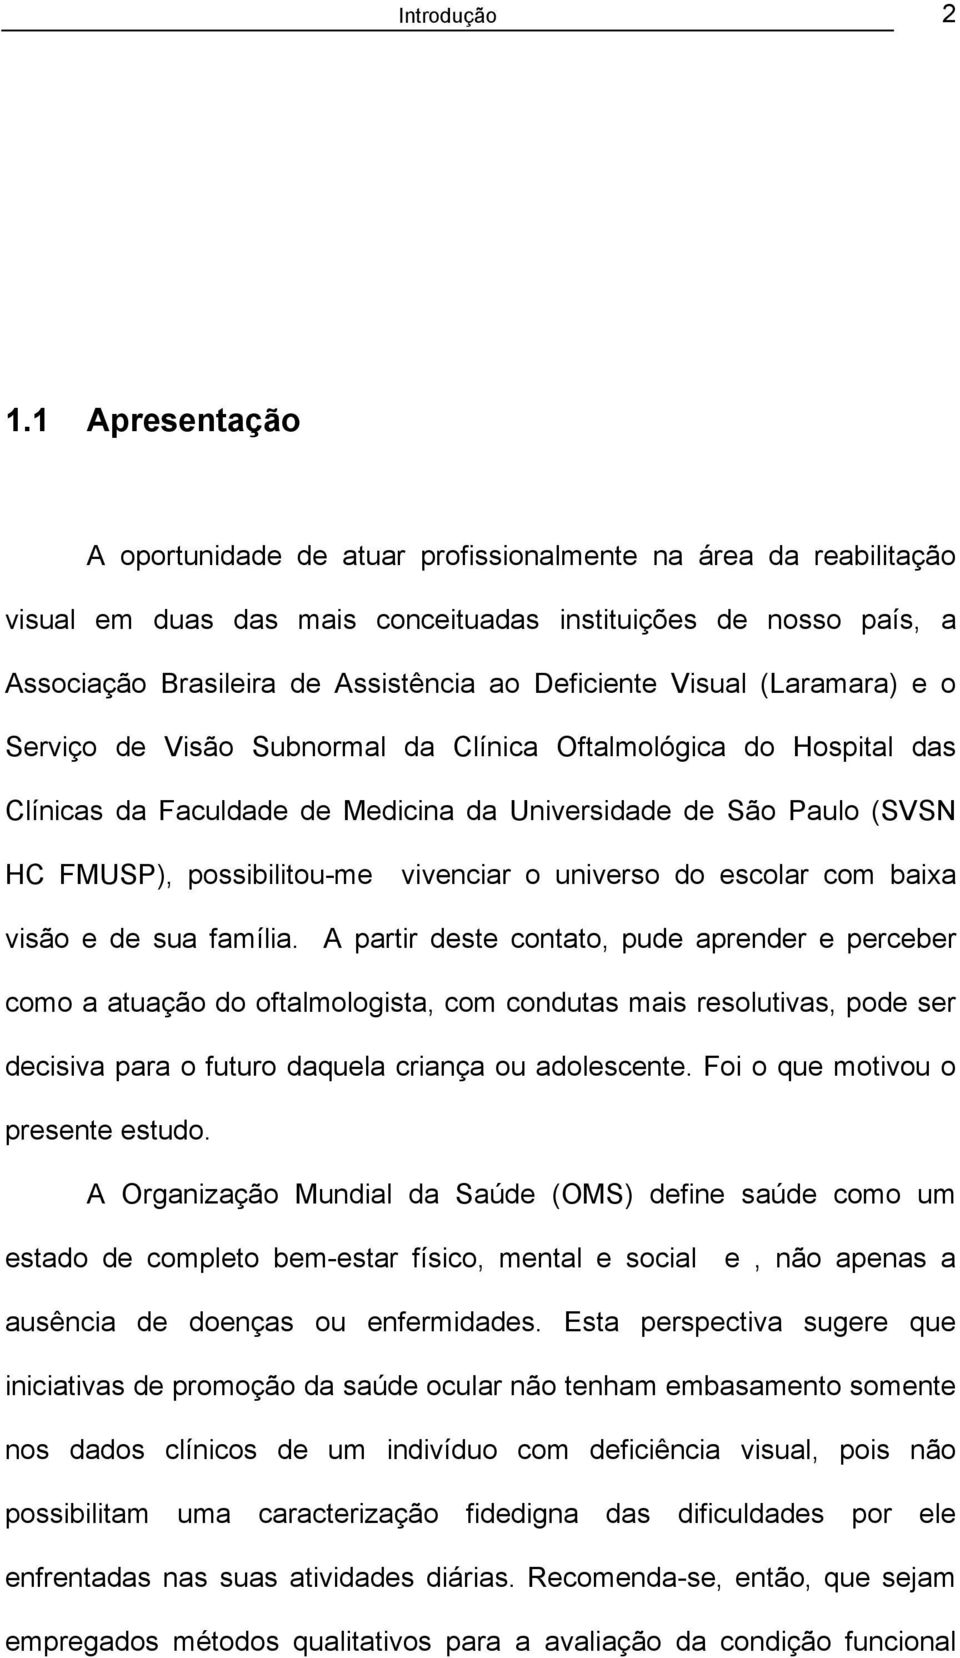 Visual (Laramara) e o Serviço de Visão Subnormal da Clínica Oftalmológica do Hospital das Clínicas da Faculdade de Medicina da Universidade de São Paulo (SVSN HC FMUSP), possibilitou-me vivenciar o